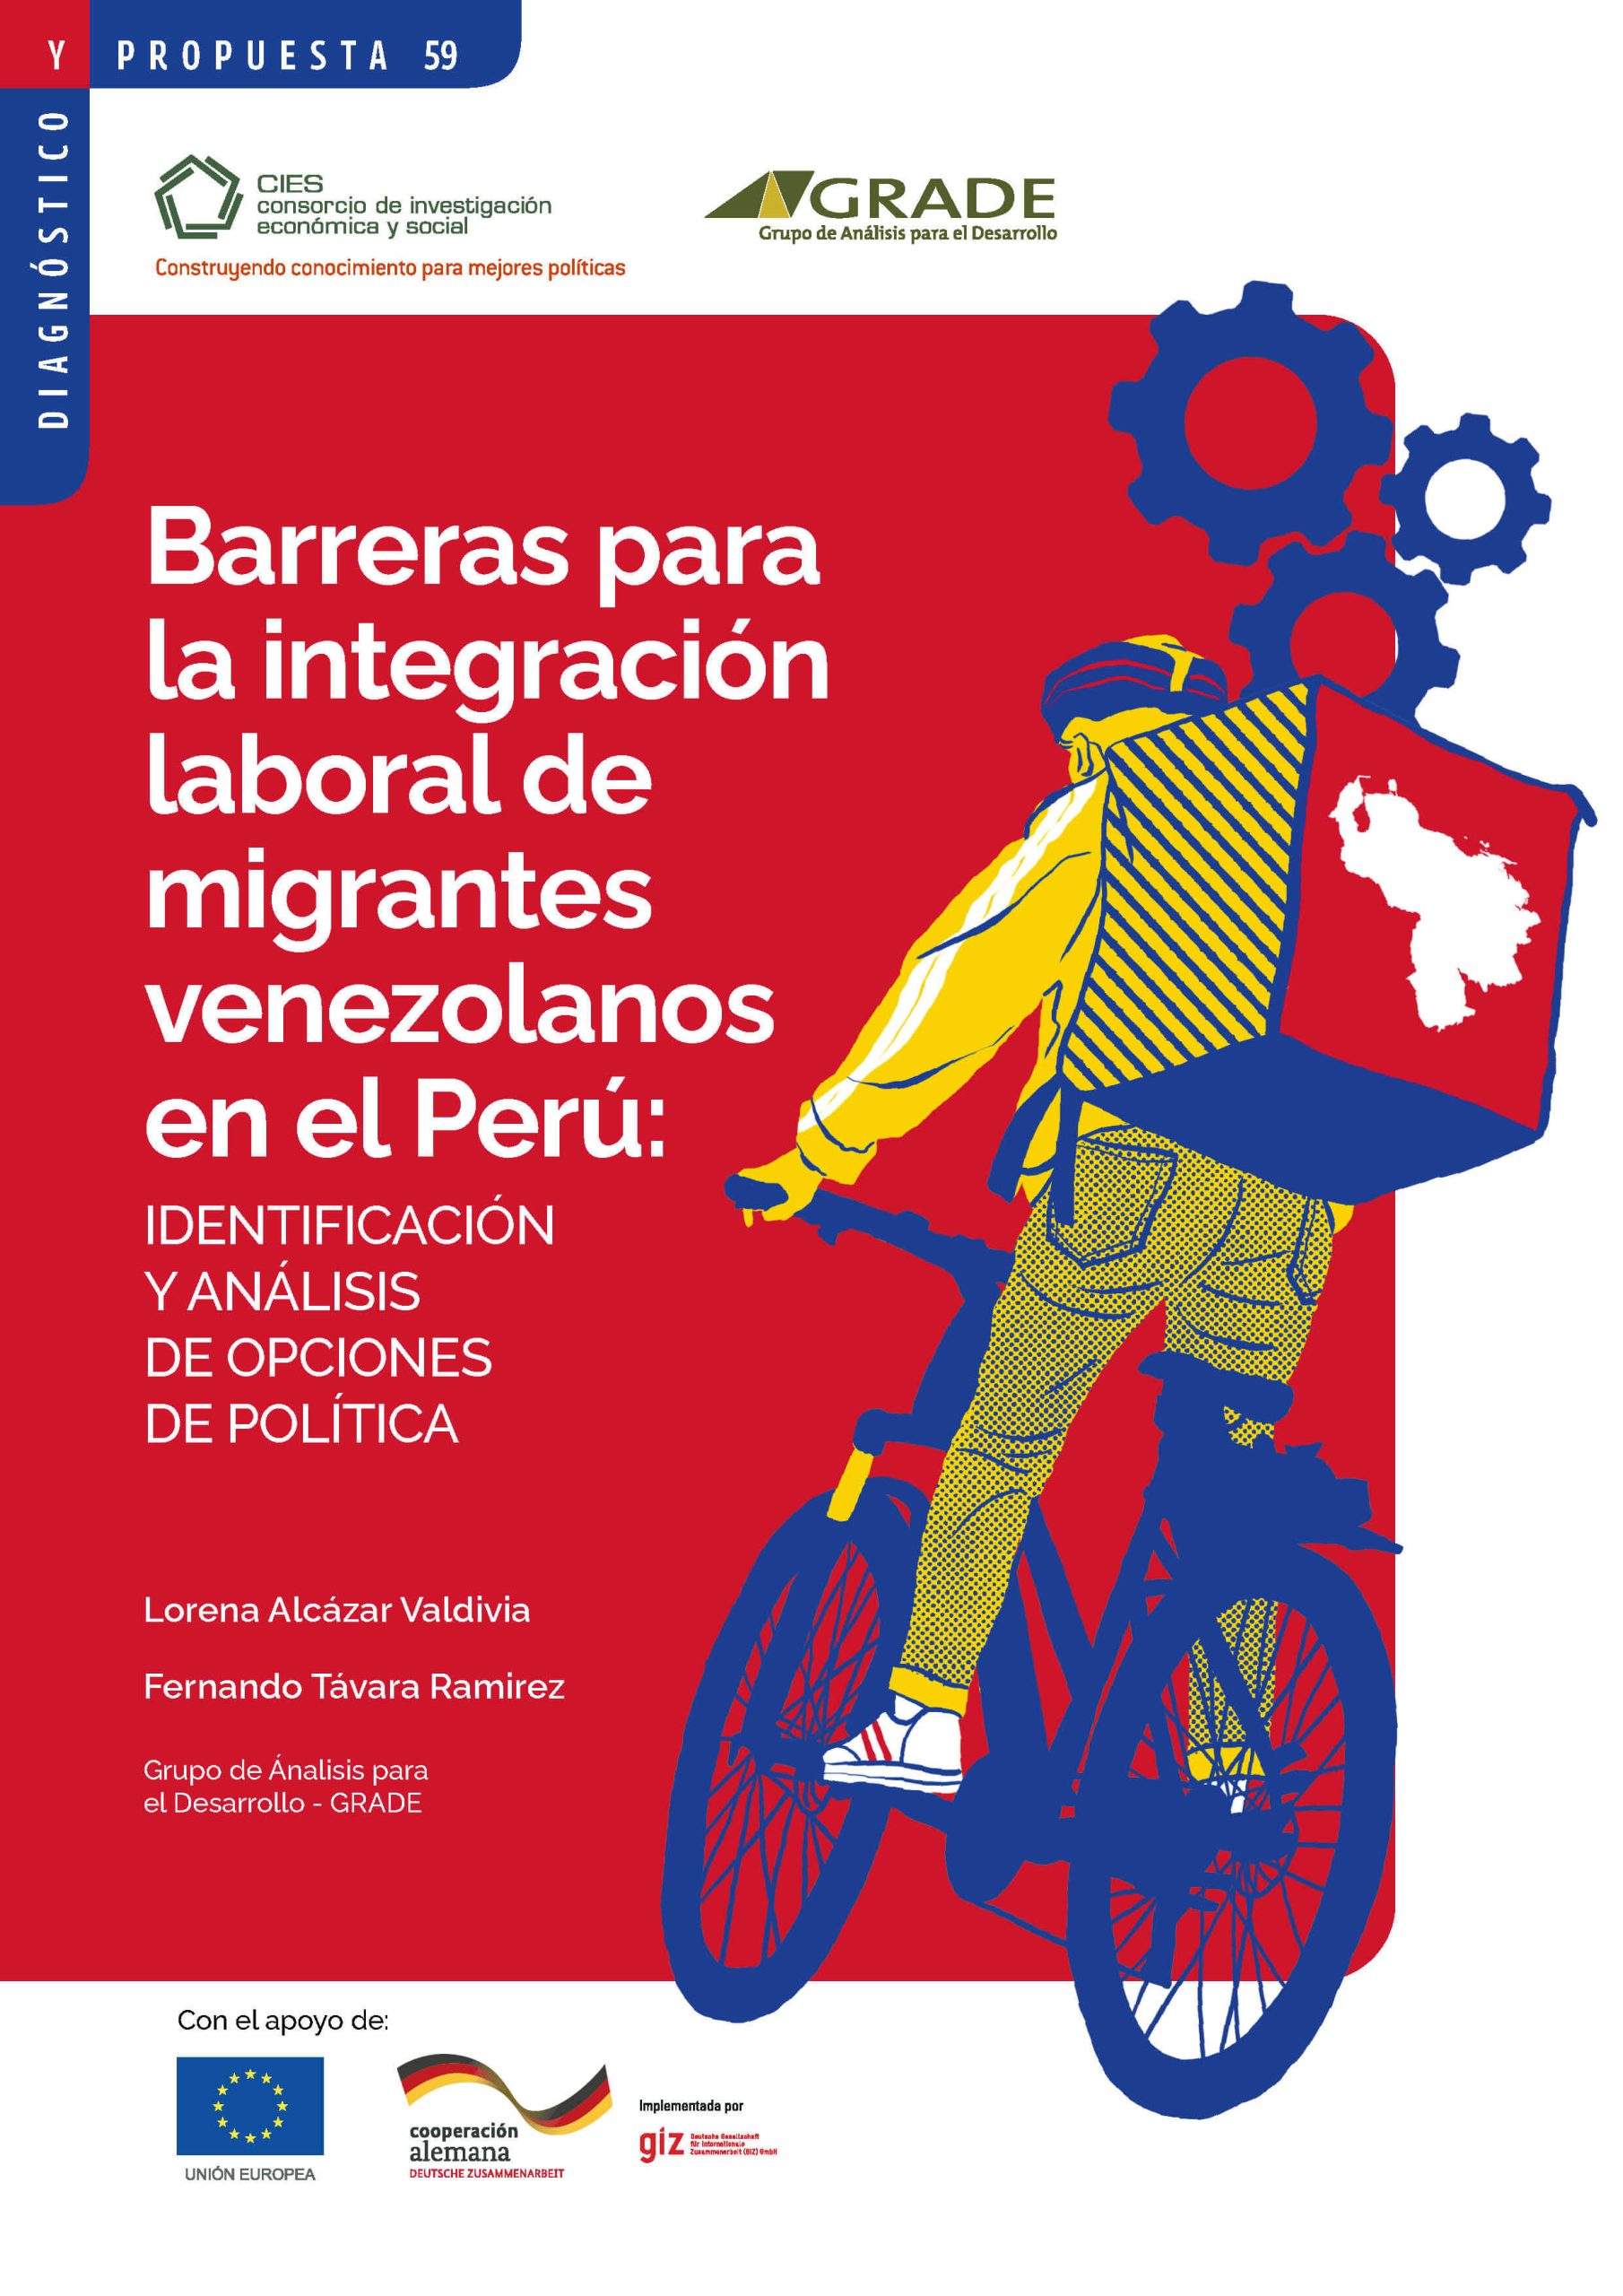 Barreras para la integración laboral de los migrantes en el Perú: Identificación y análisis de opciones de política